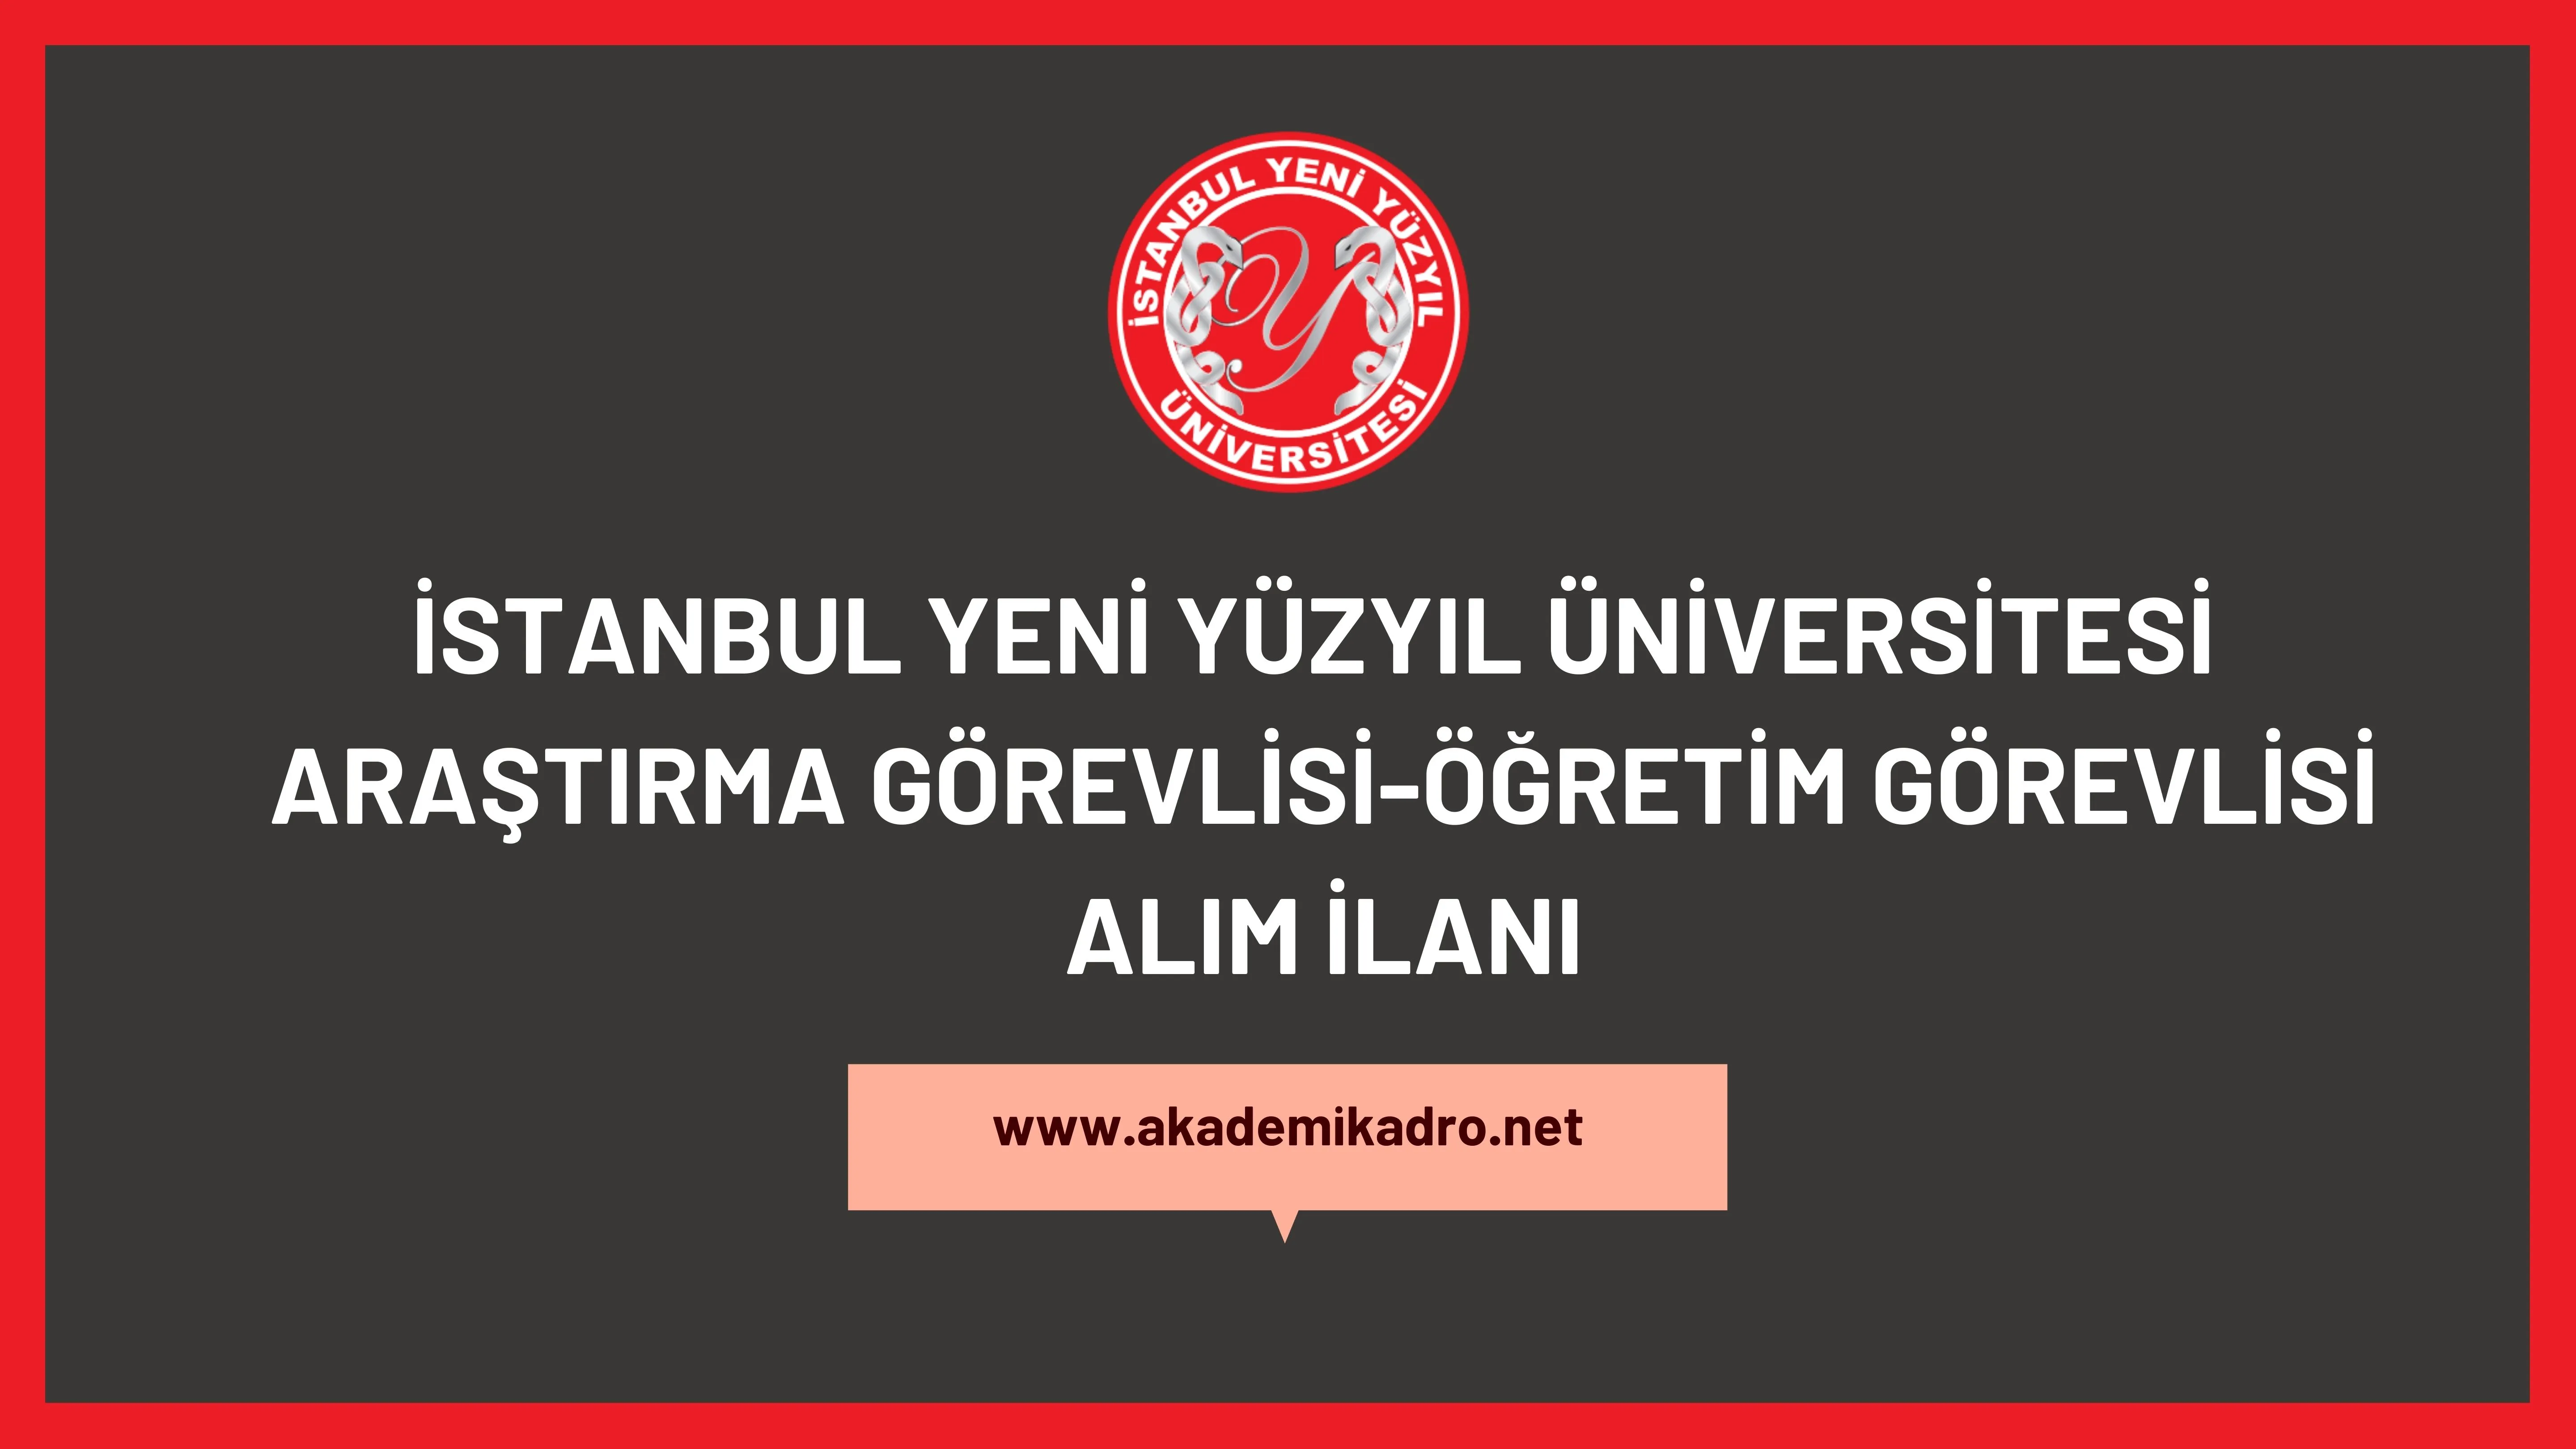 İstanbul Yeni Yüzyıl Üniversitesi 3 Araştırma görevlisi, Öğretim görevlisi ve çok sayıda akademik personel alacaktır.